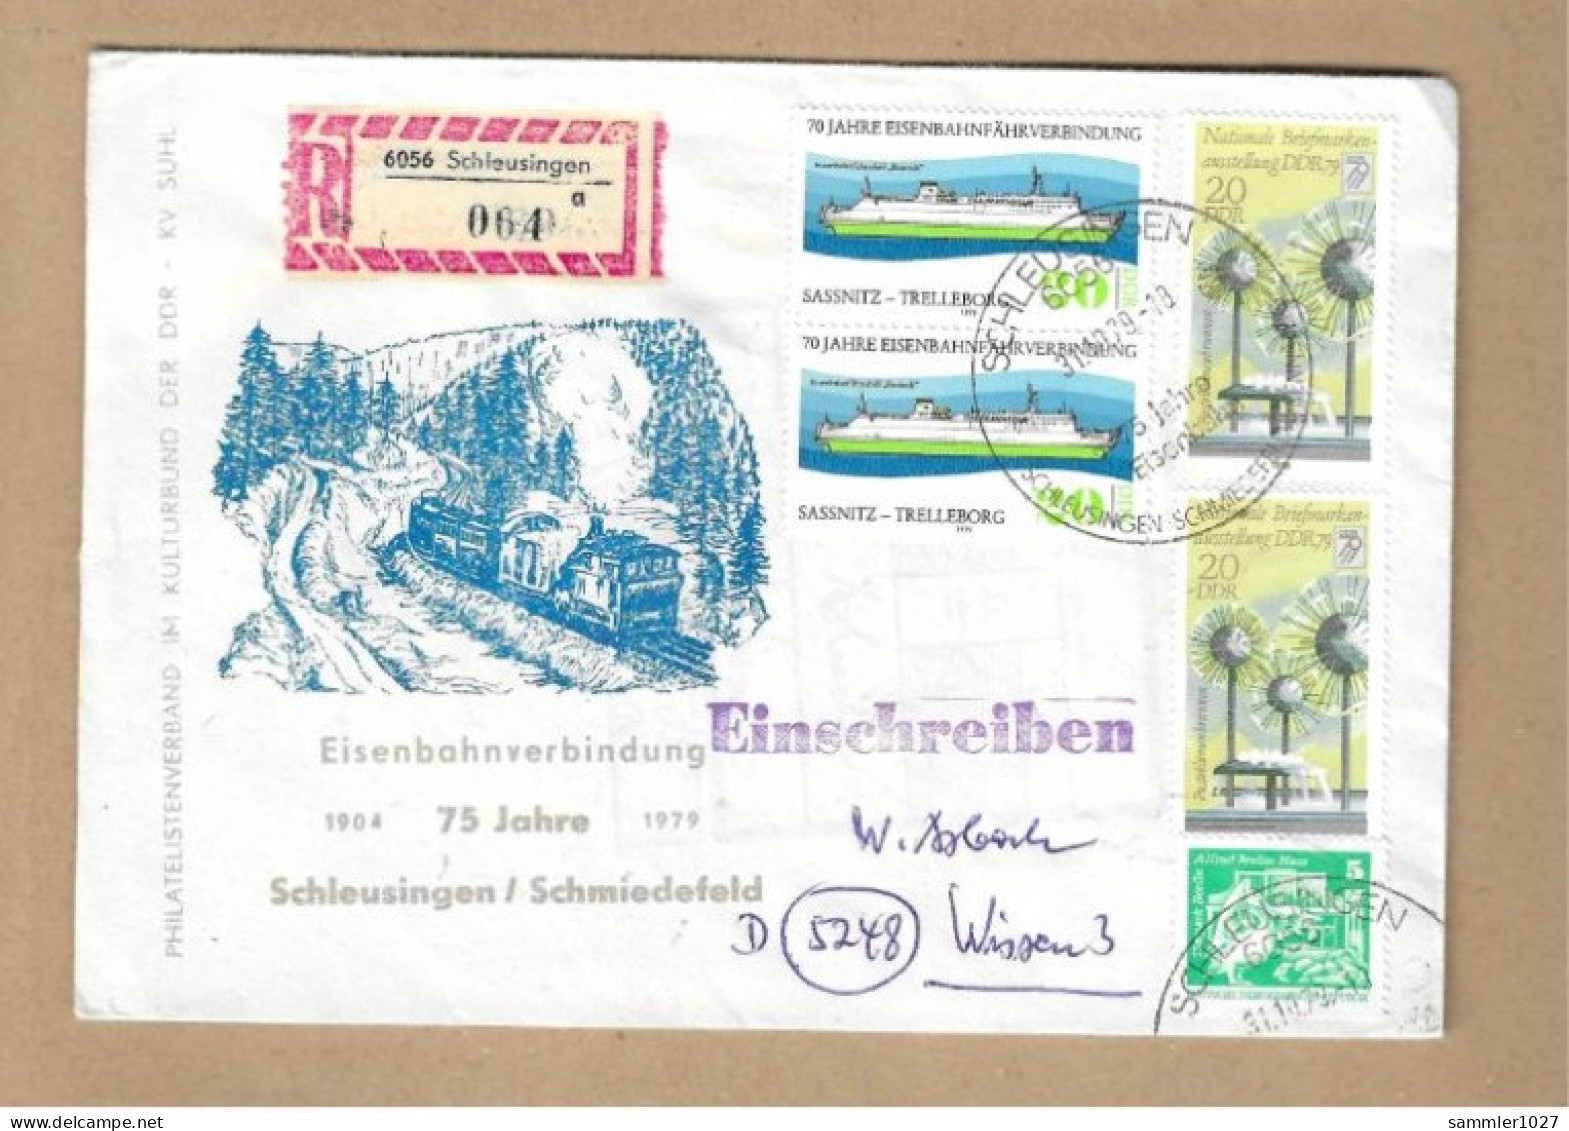 Los Vom 03.05 Einschreiben-Briefumschlag Aus Schleusingen  1979  Eisenbahn - Briefe U. Dokumente